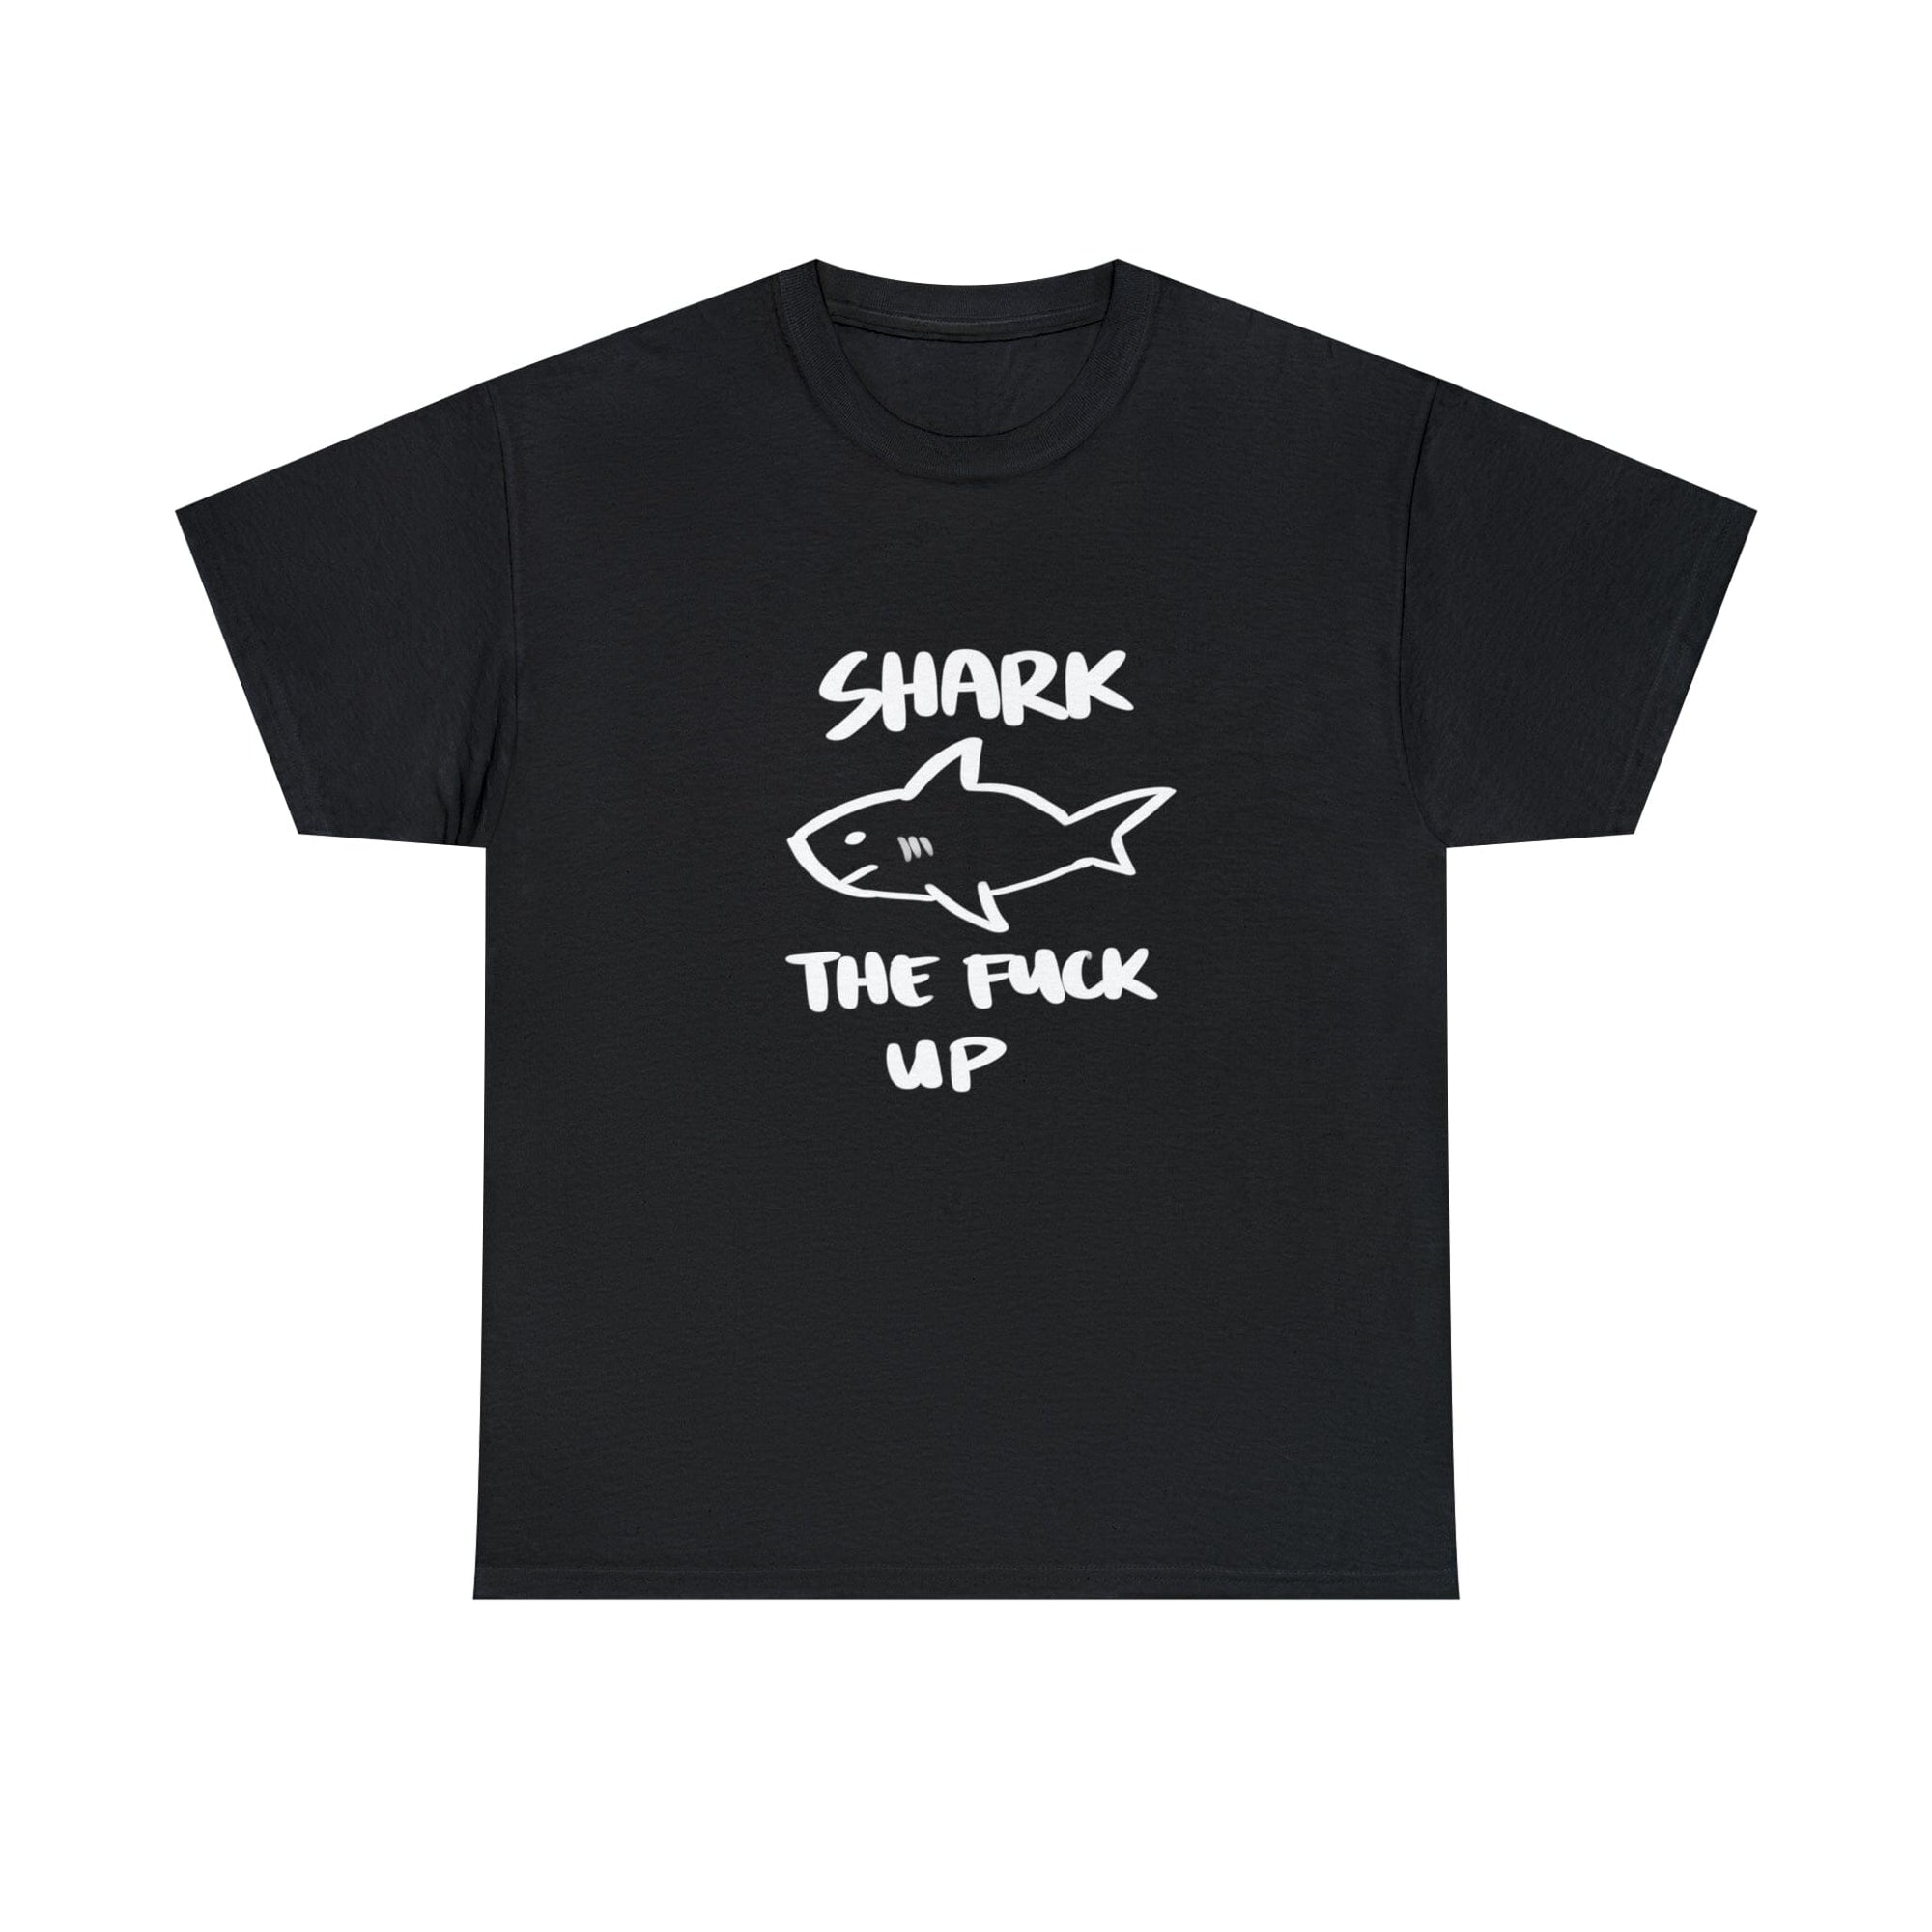 Shark up - T-Shirt T-Shirt Ooka Black S 